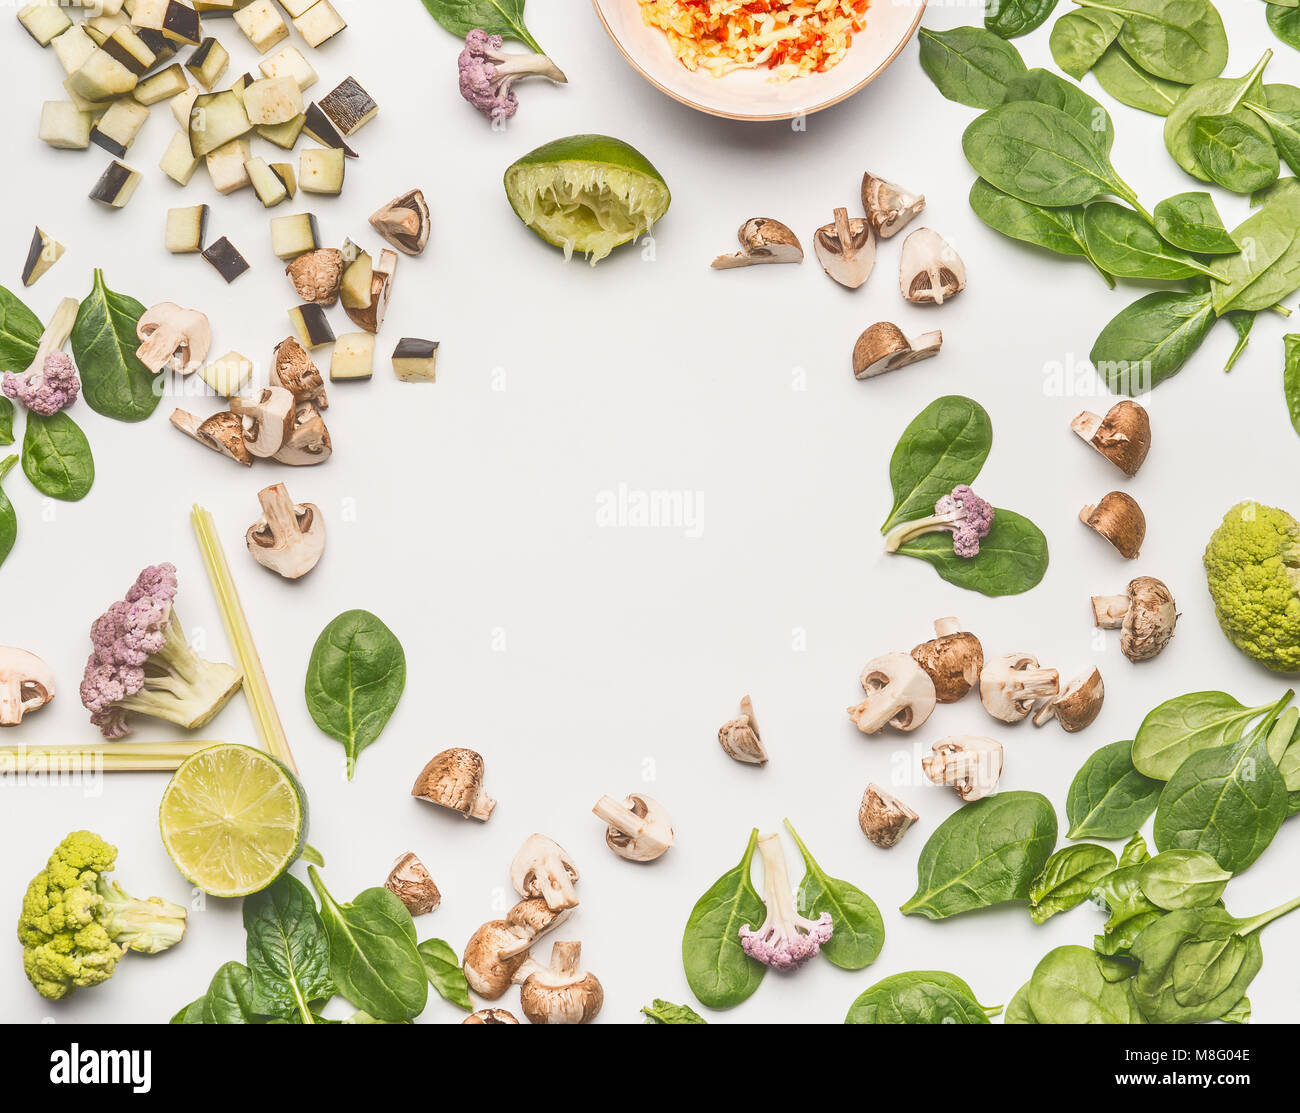 Cibo laici piatto con gli spinaci tritati funghi champignon, limone e verdure su sfondo bianco, telaio, vista dall'alto con spazio di copia Foto Stock